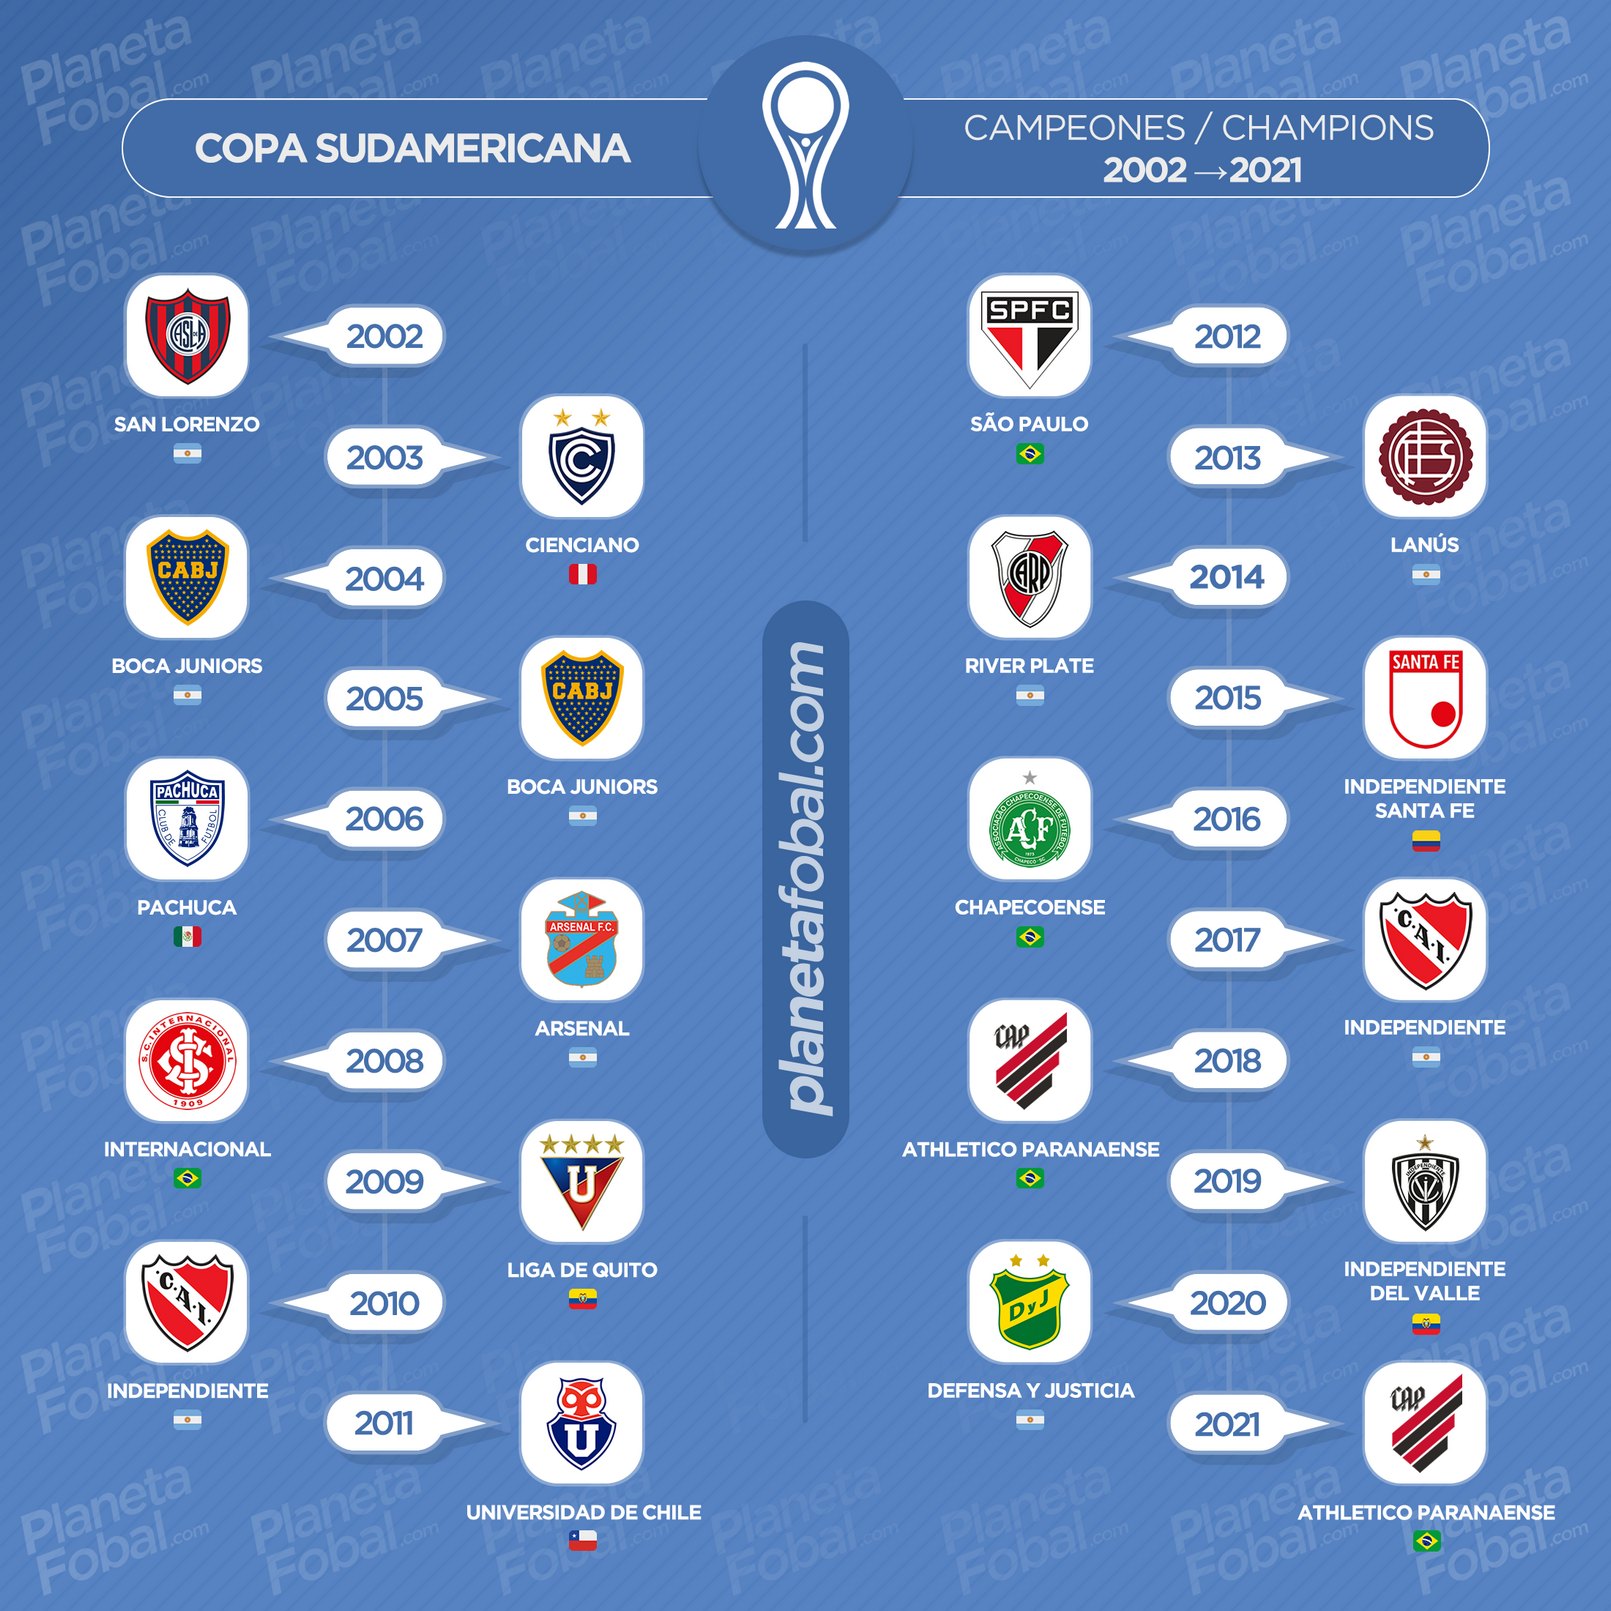 Todos los campeones de la Copa CONMEBOL Sudamericana | @planetafobal